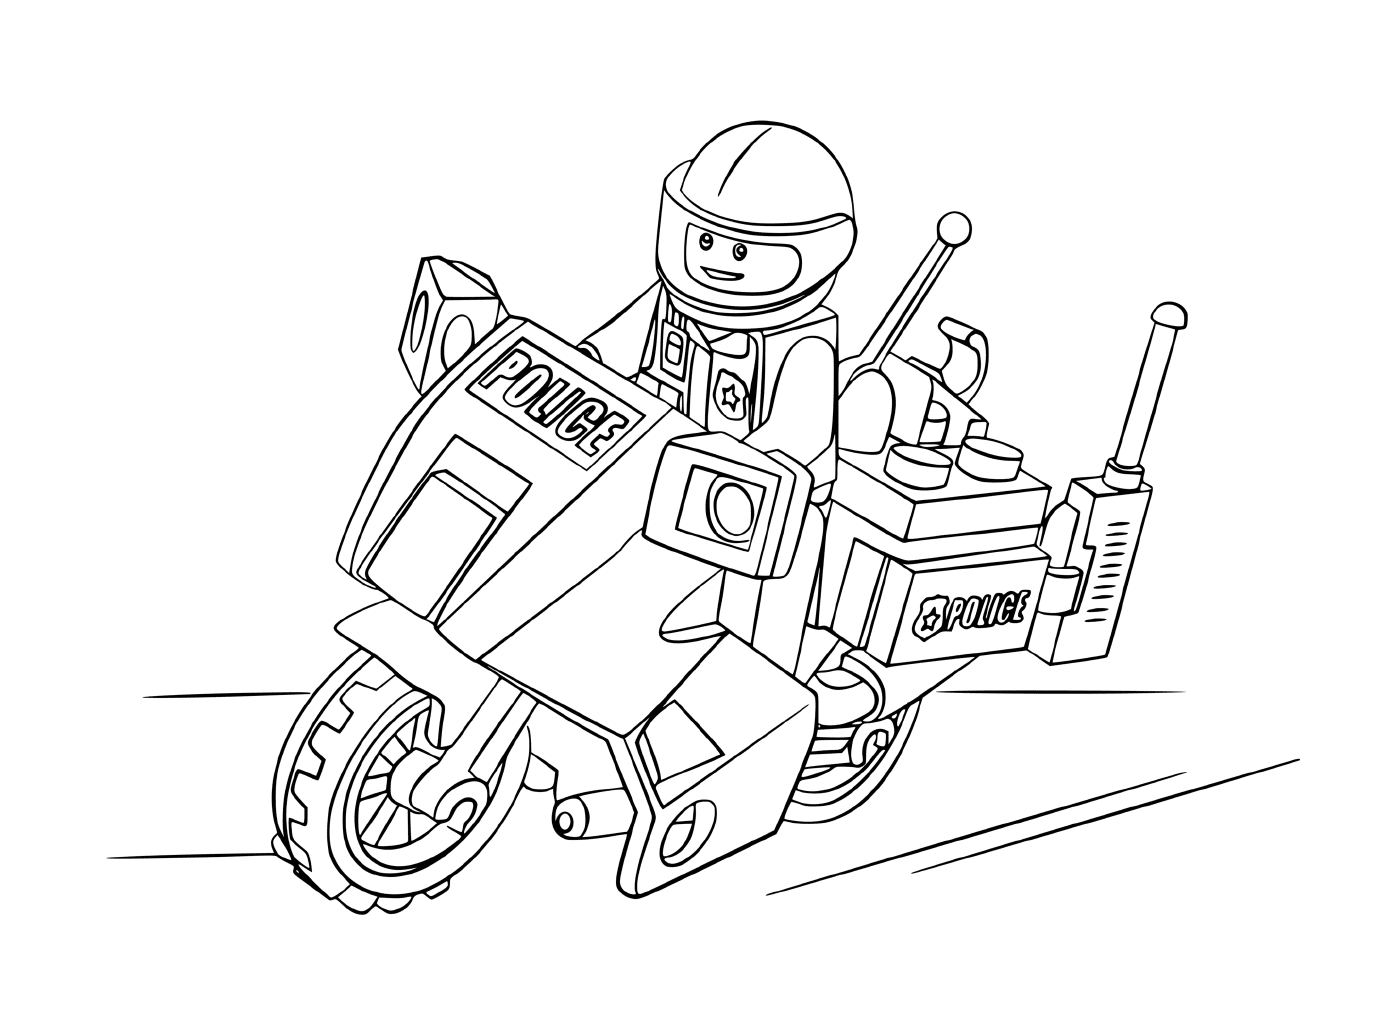  Poliziotto Lego in moto 